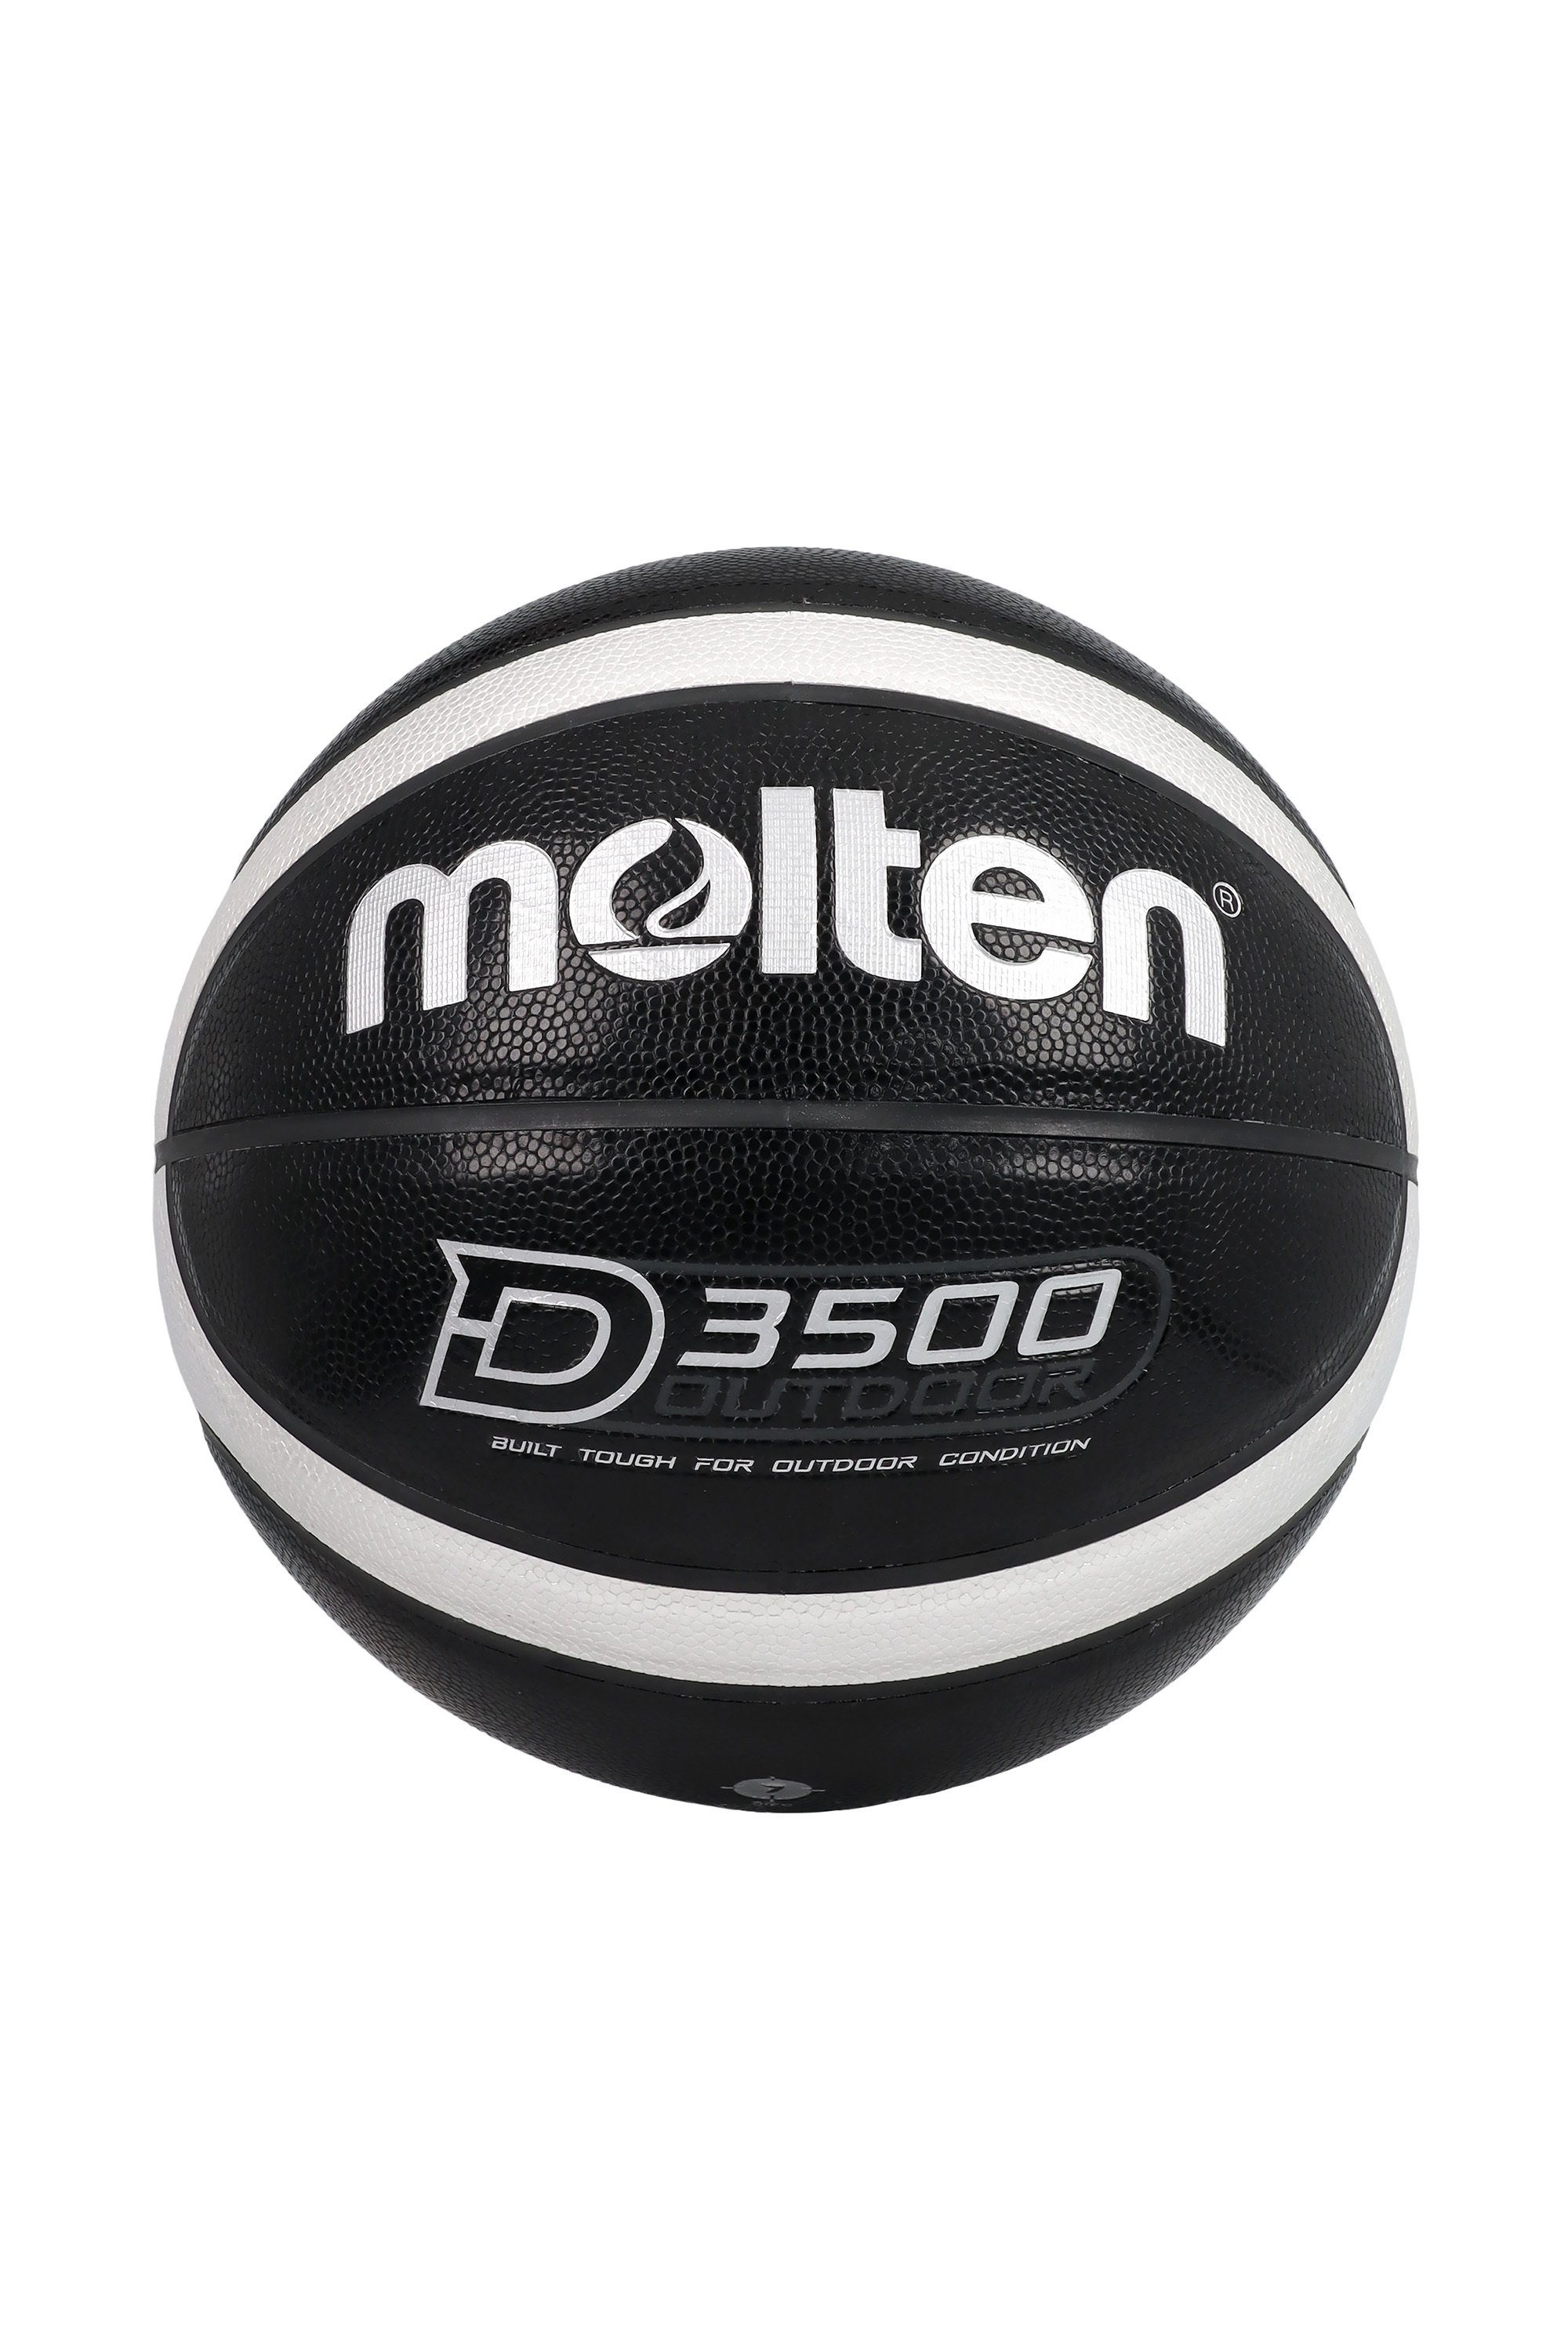 Größe B7D3500-KS Molten Basketball 7